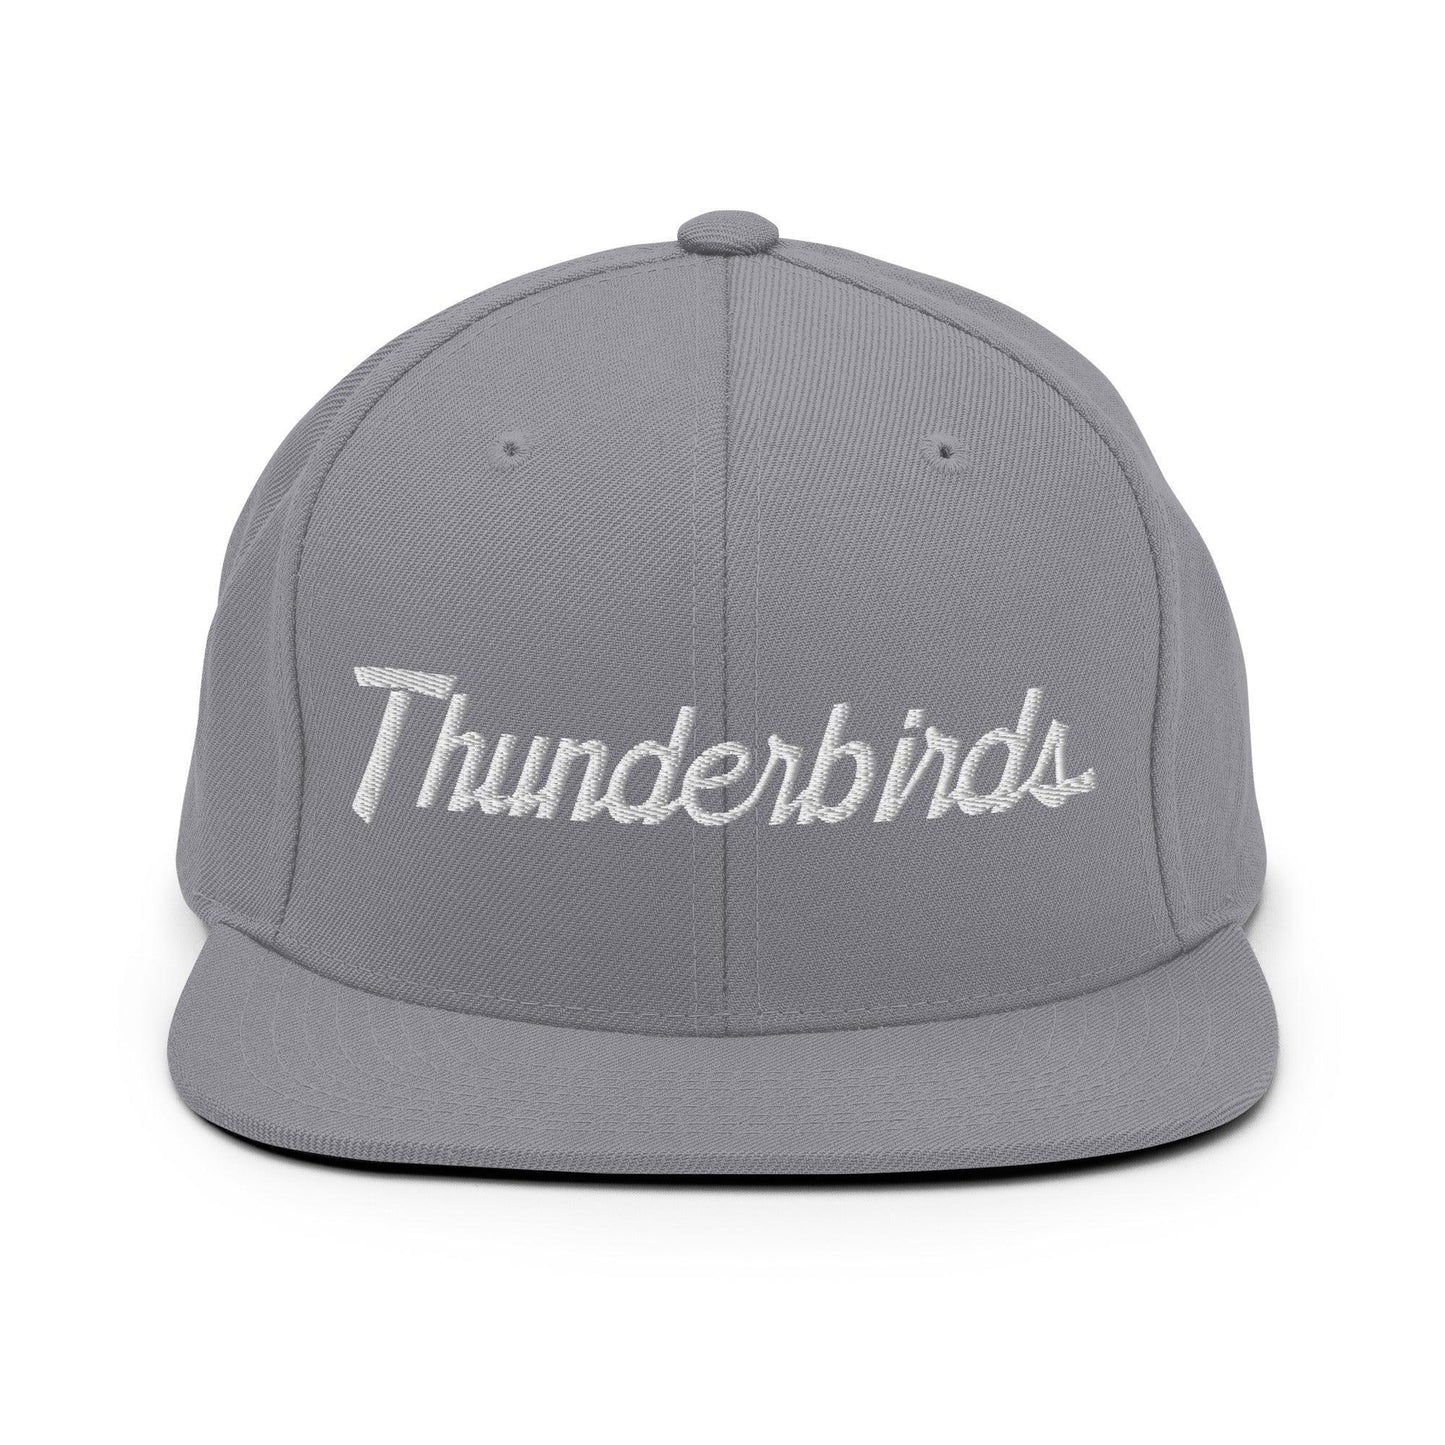 Thunderbirds School Mascot Script Snapback Hat Silver